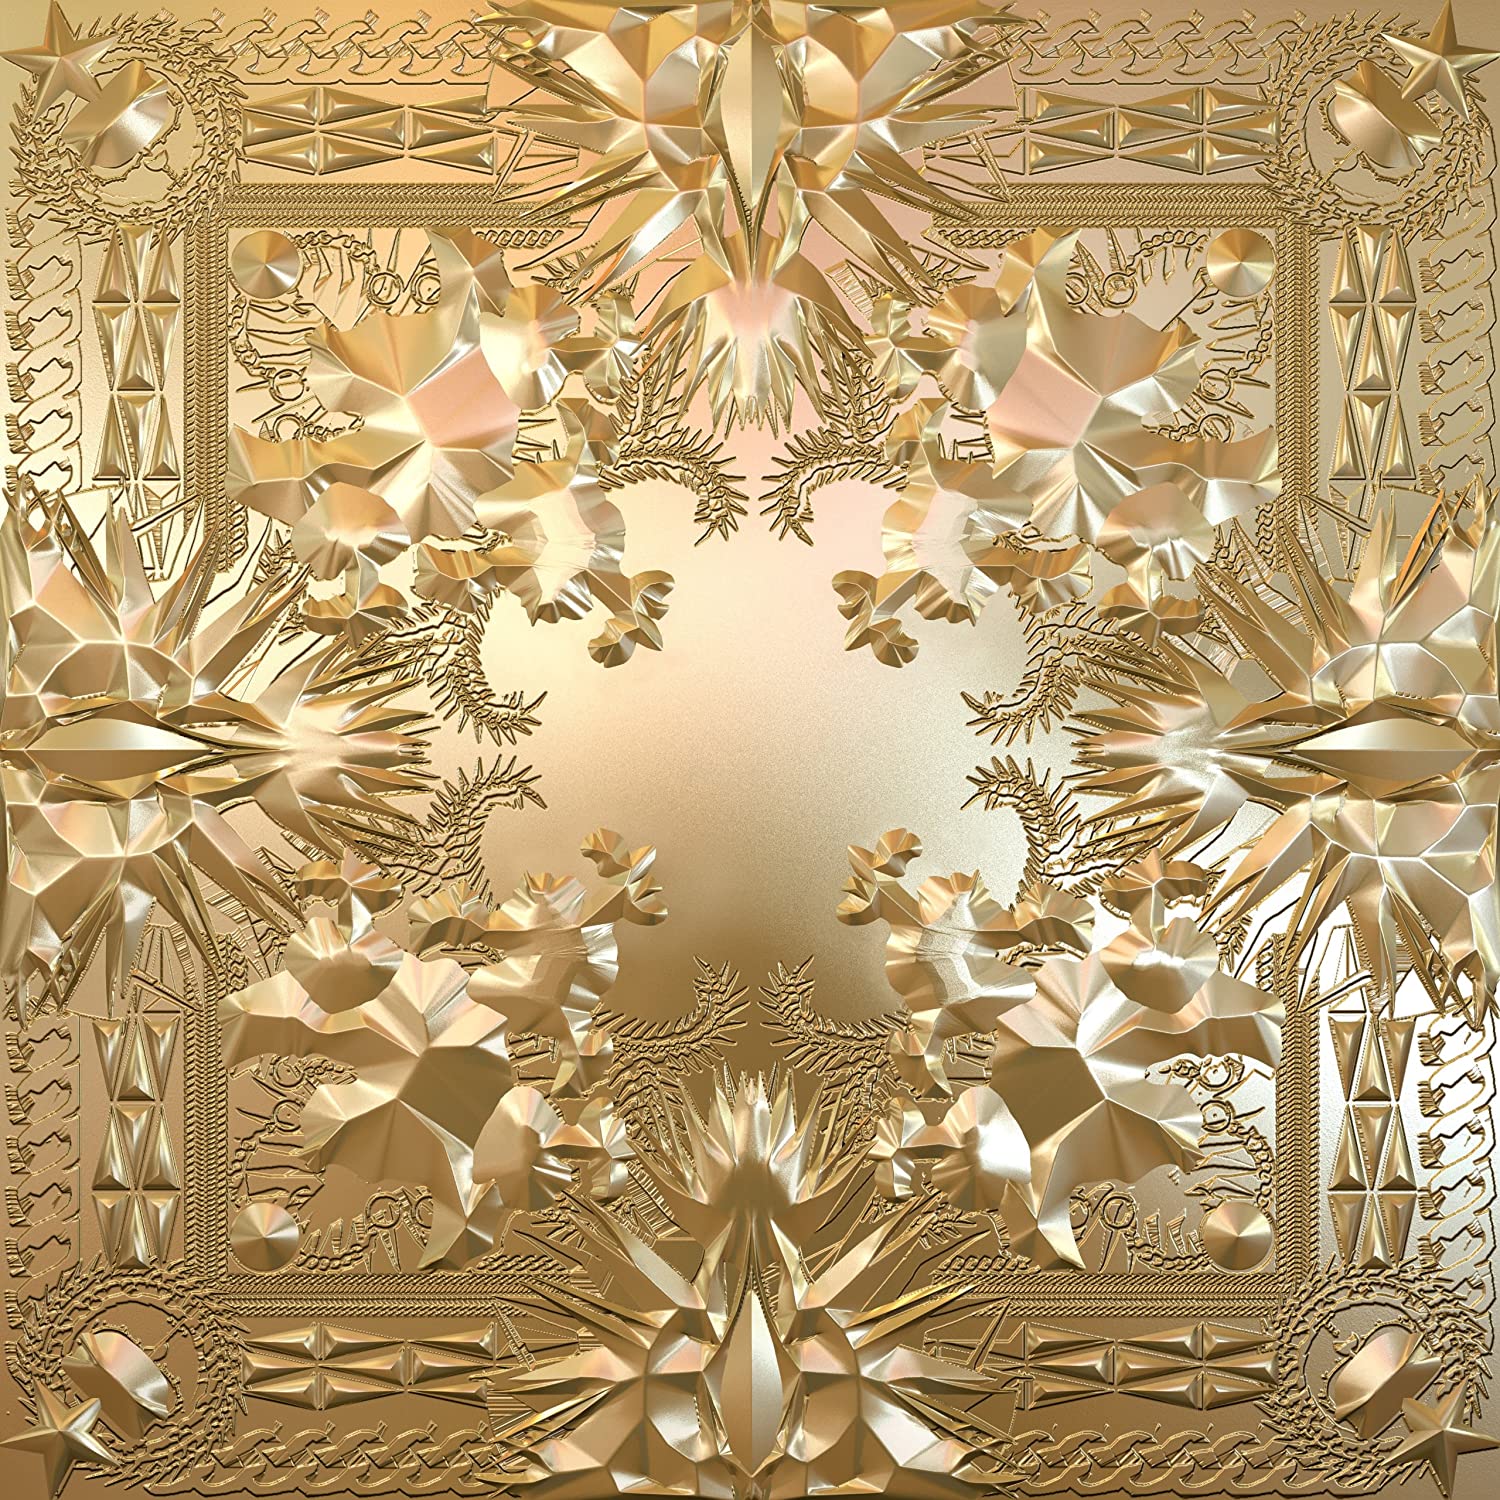 La pochette de l’album Watch the Throne de Jay-Z et Kanye West, signée Virgil Abloh.